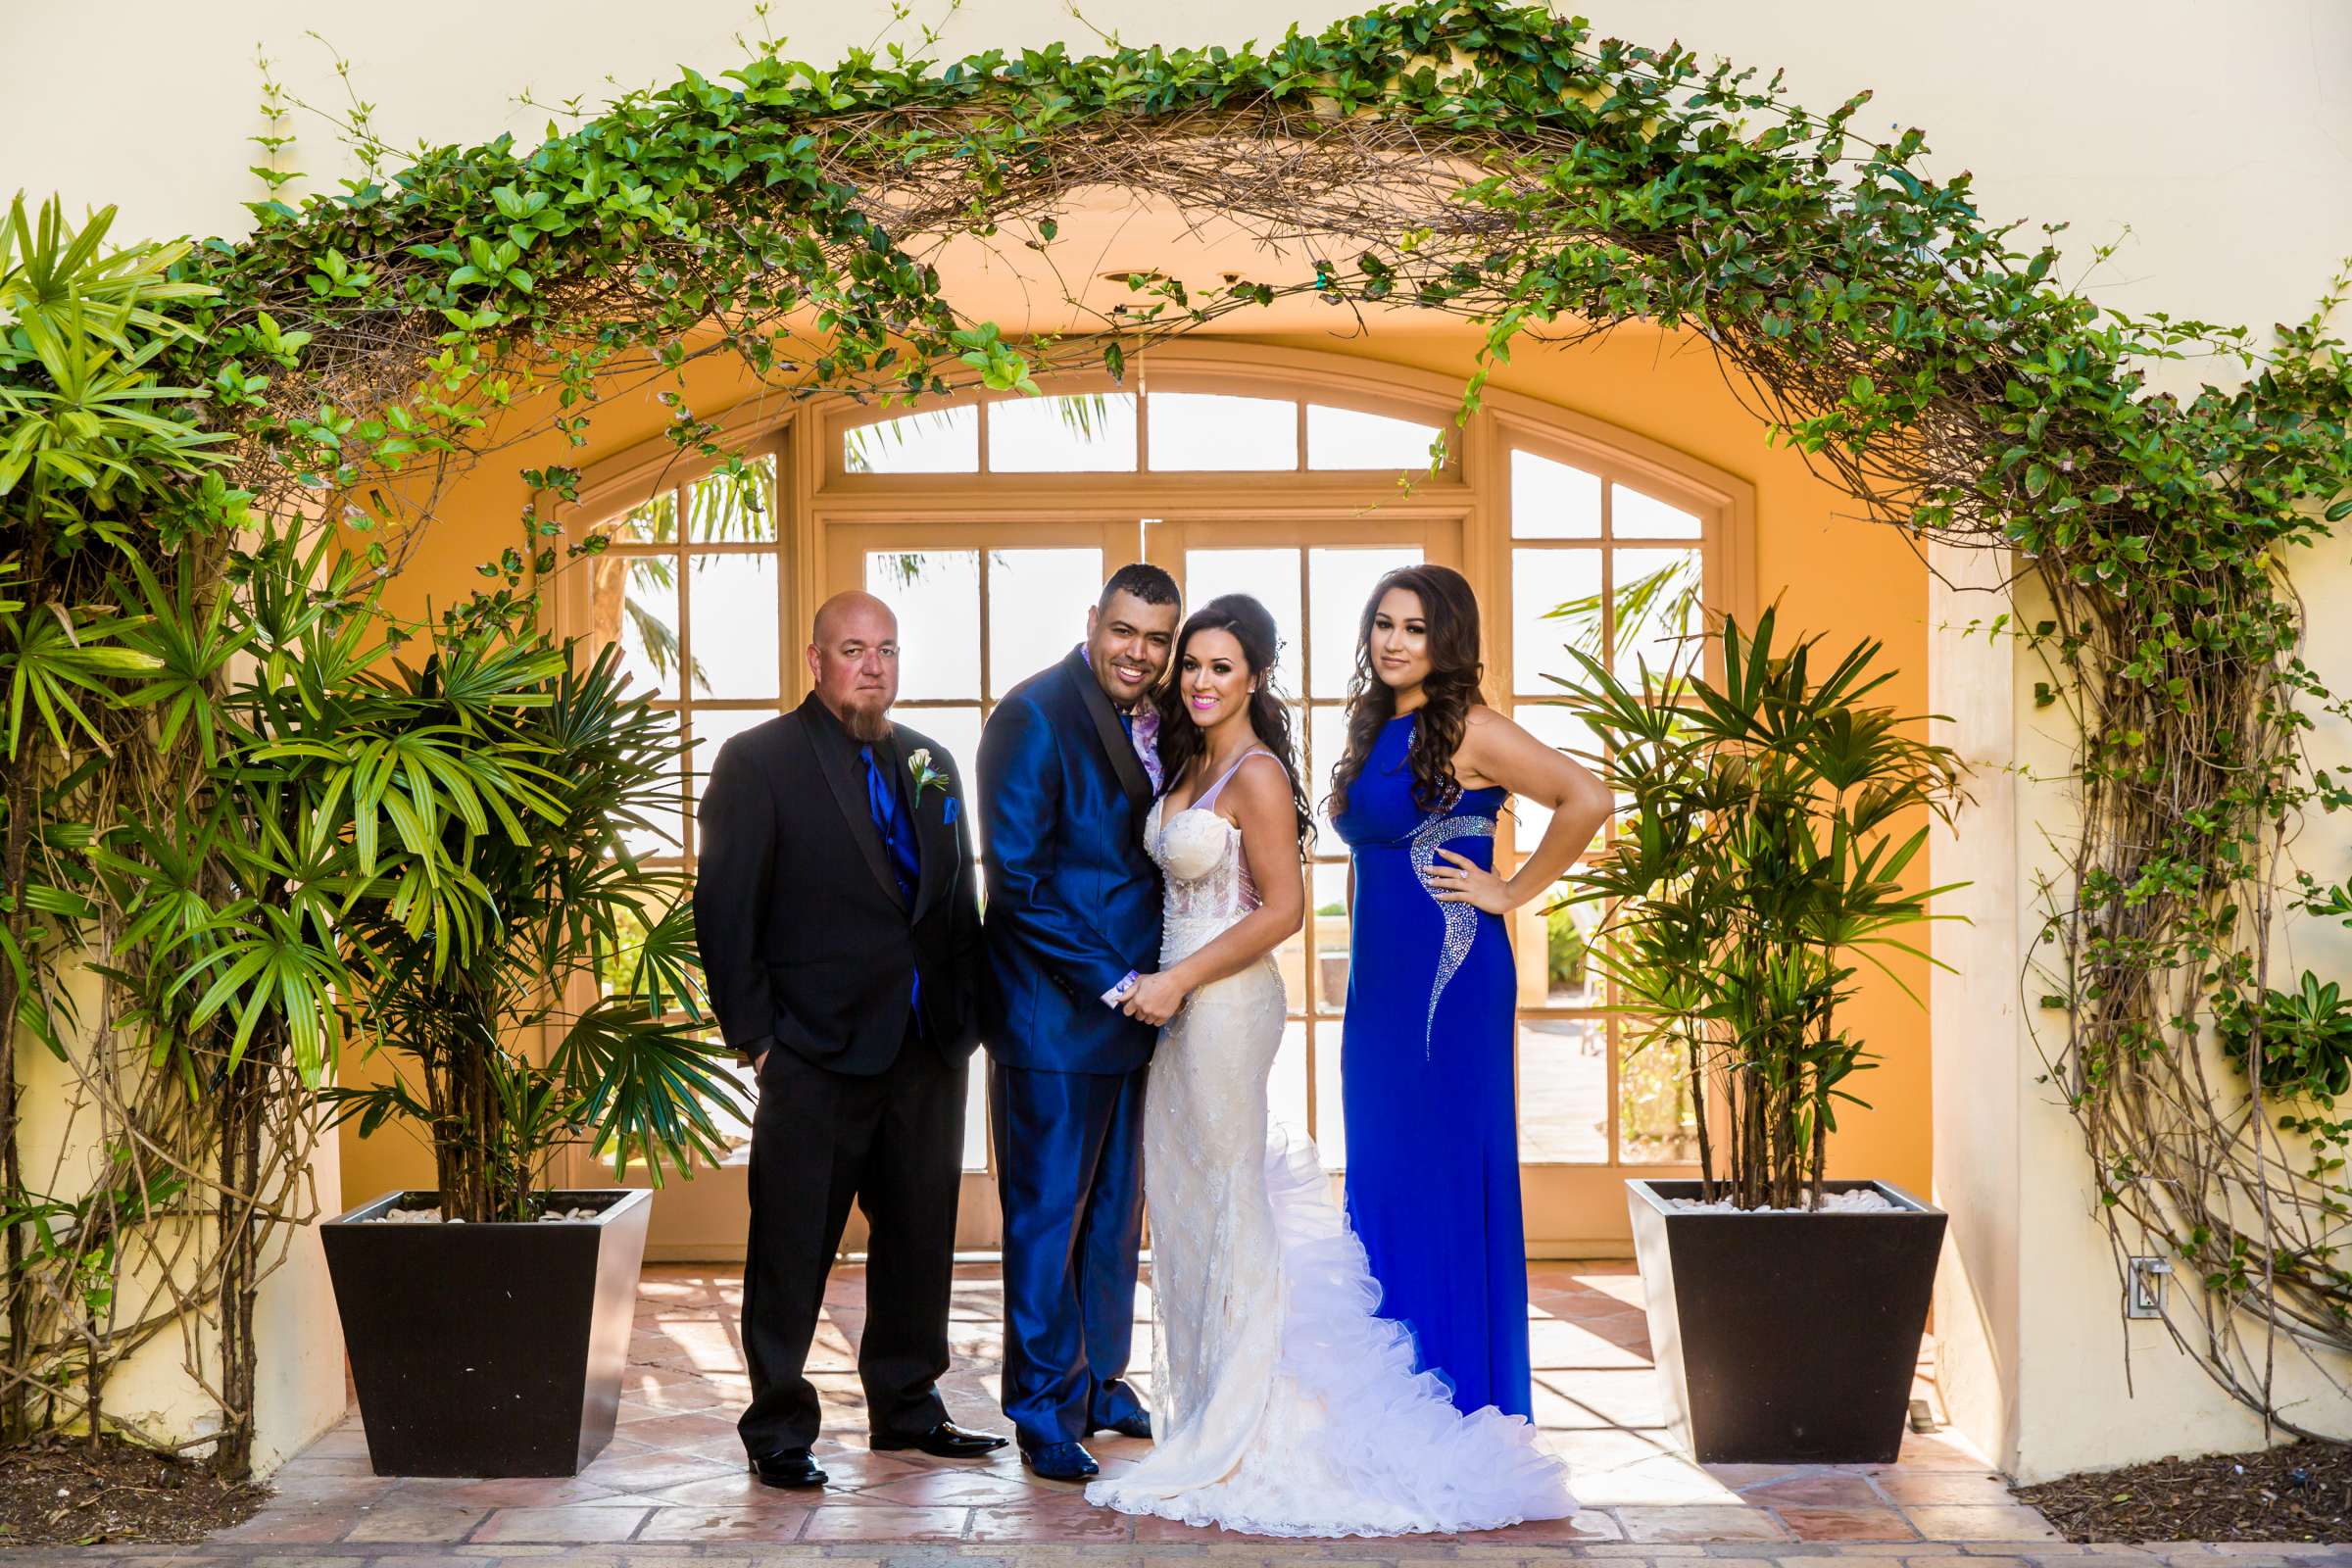 Ritz Carlton-Laguna Niguel Wedding coordinated by Willmus Weddings, Stephanie and Carl Wedding Photo #83 by True Photography